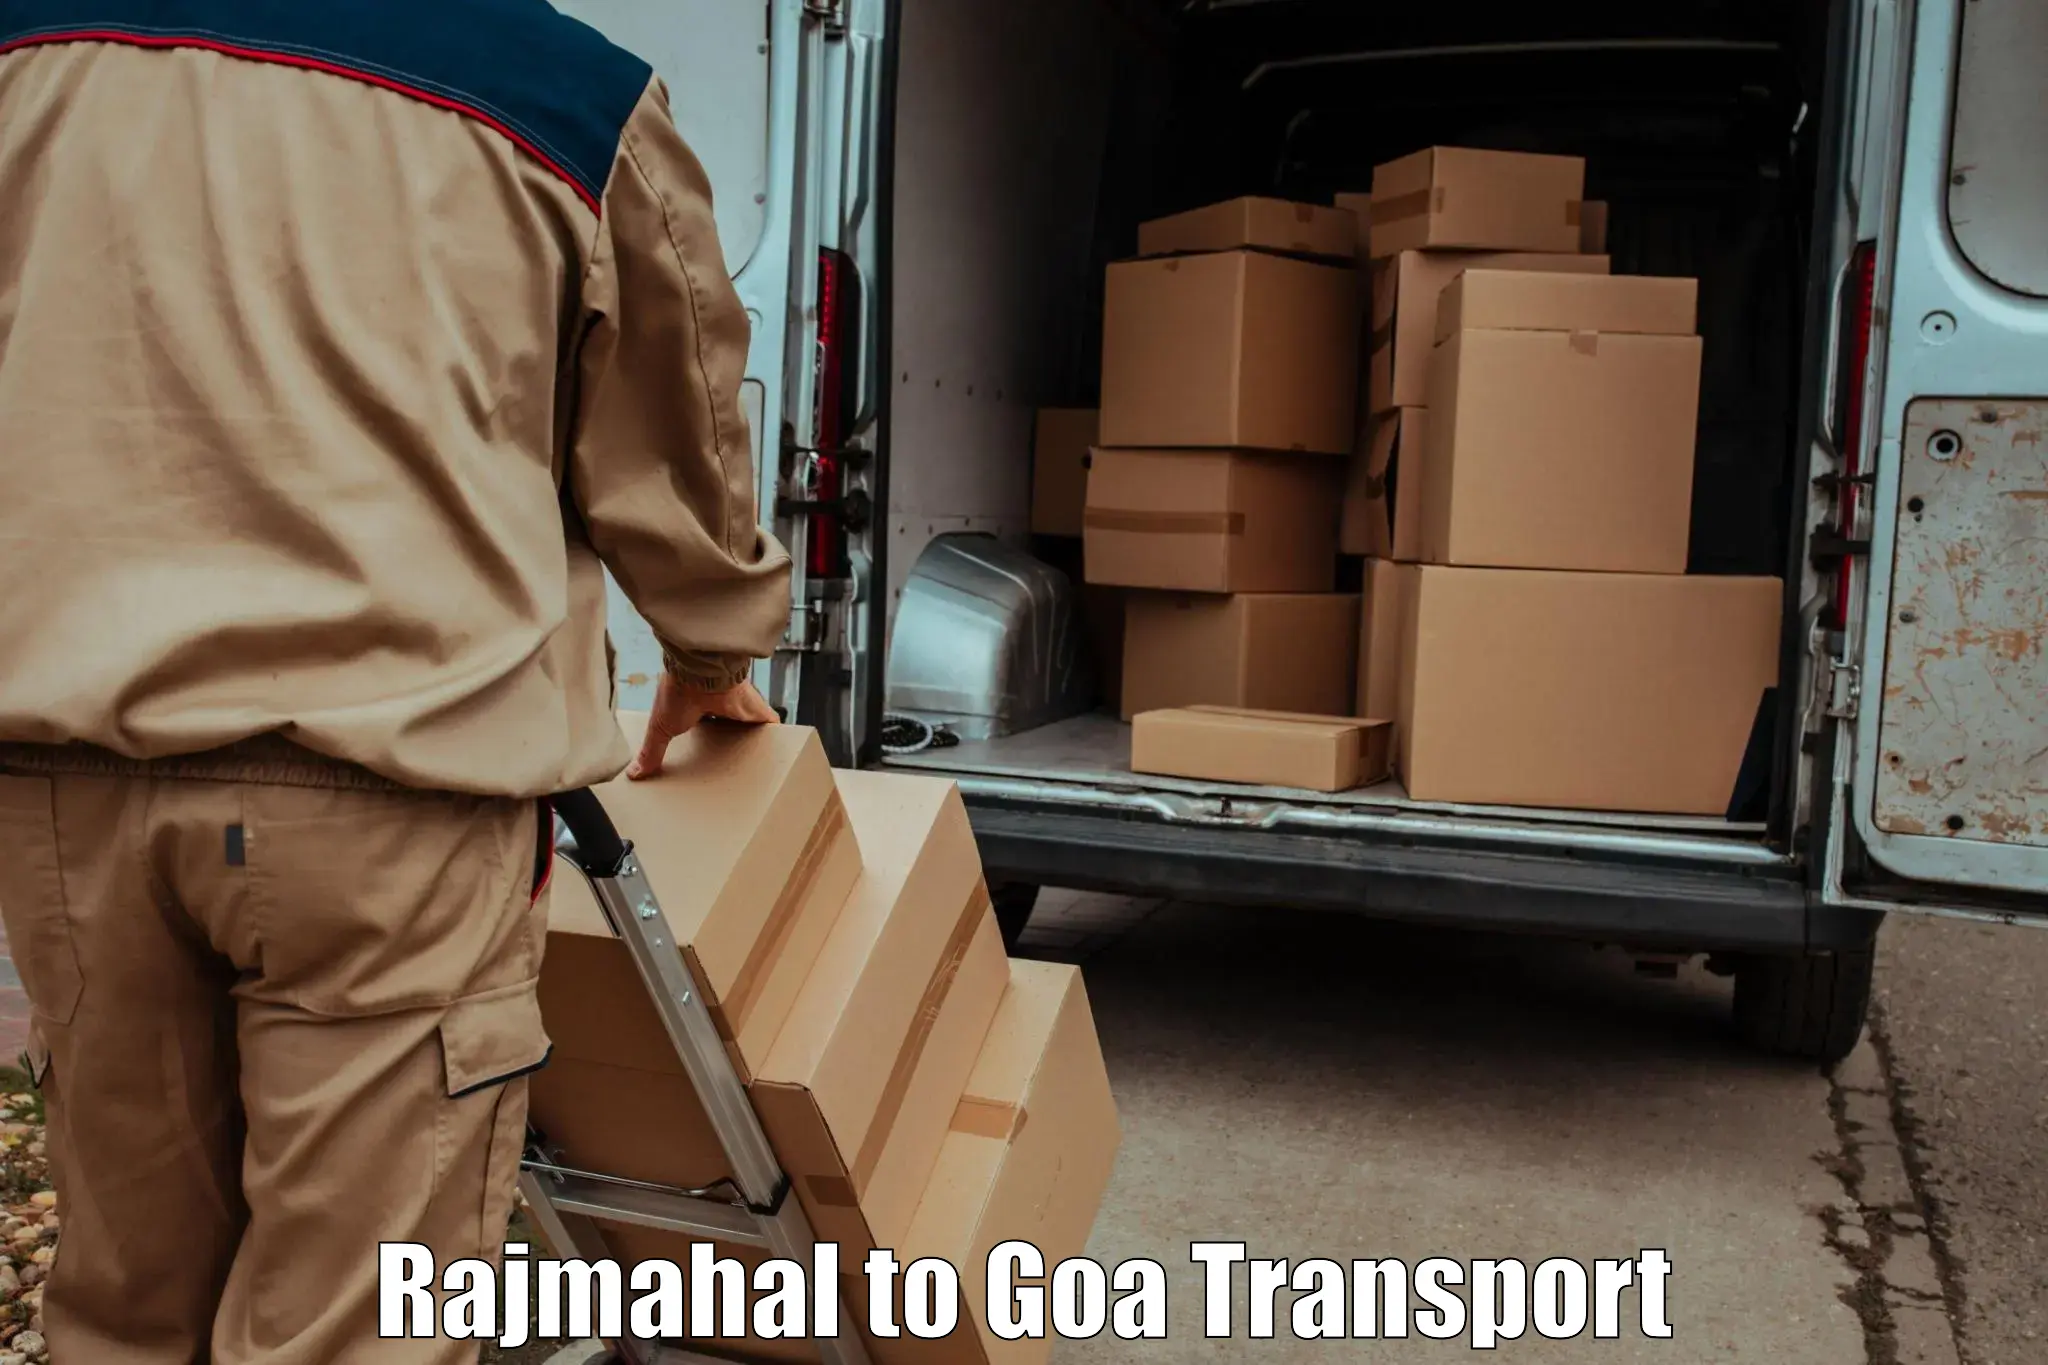 Express transport services Rajmahal to Panaji